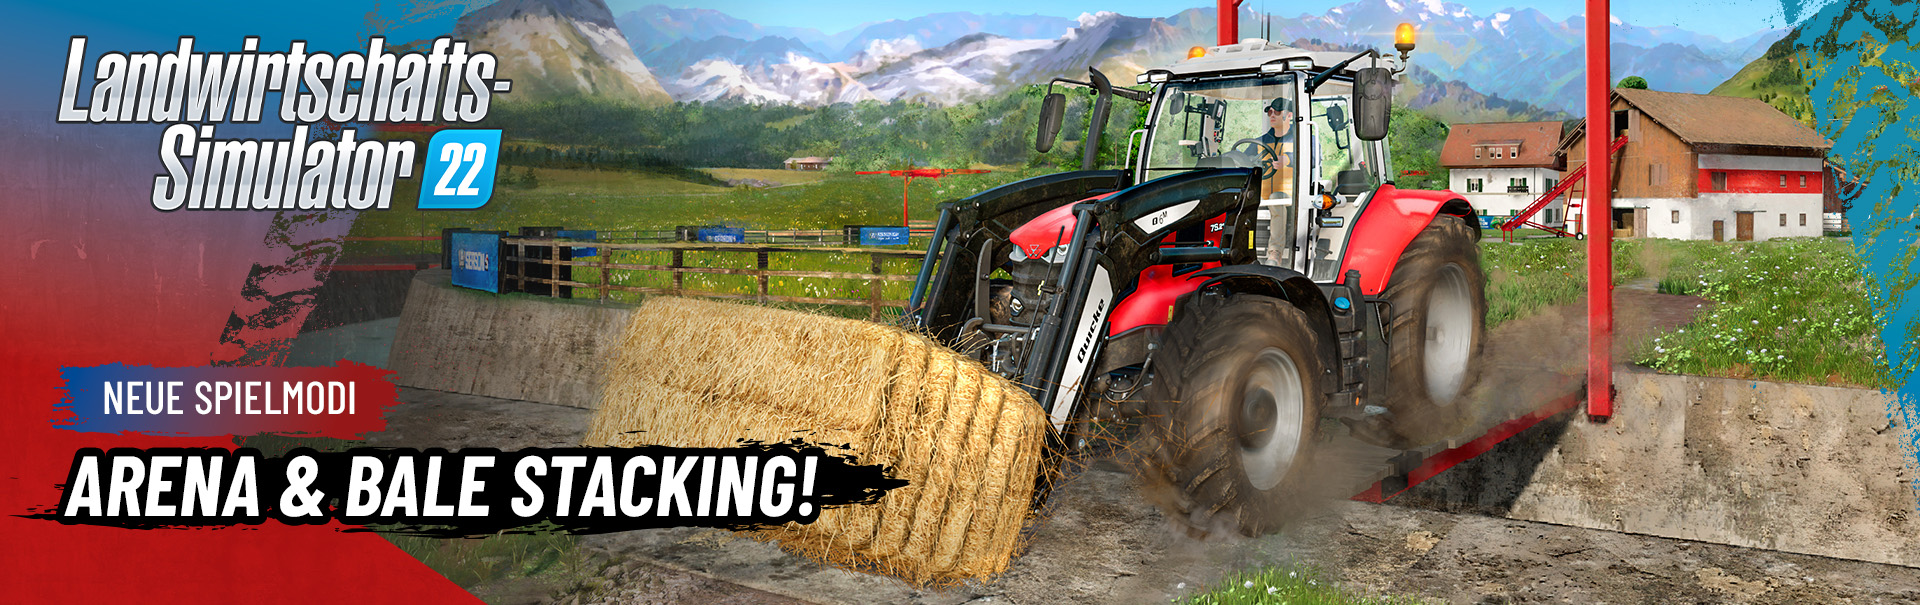 Landwirtschafts-Simulator 22: Hay & Forage Pack bringt neue Marken